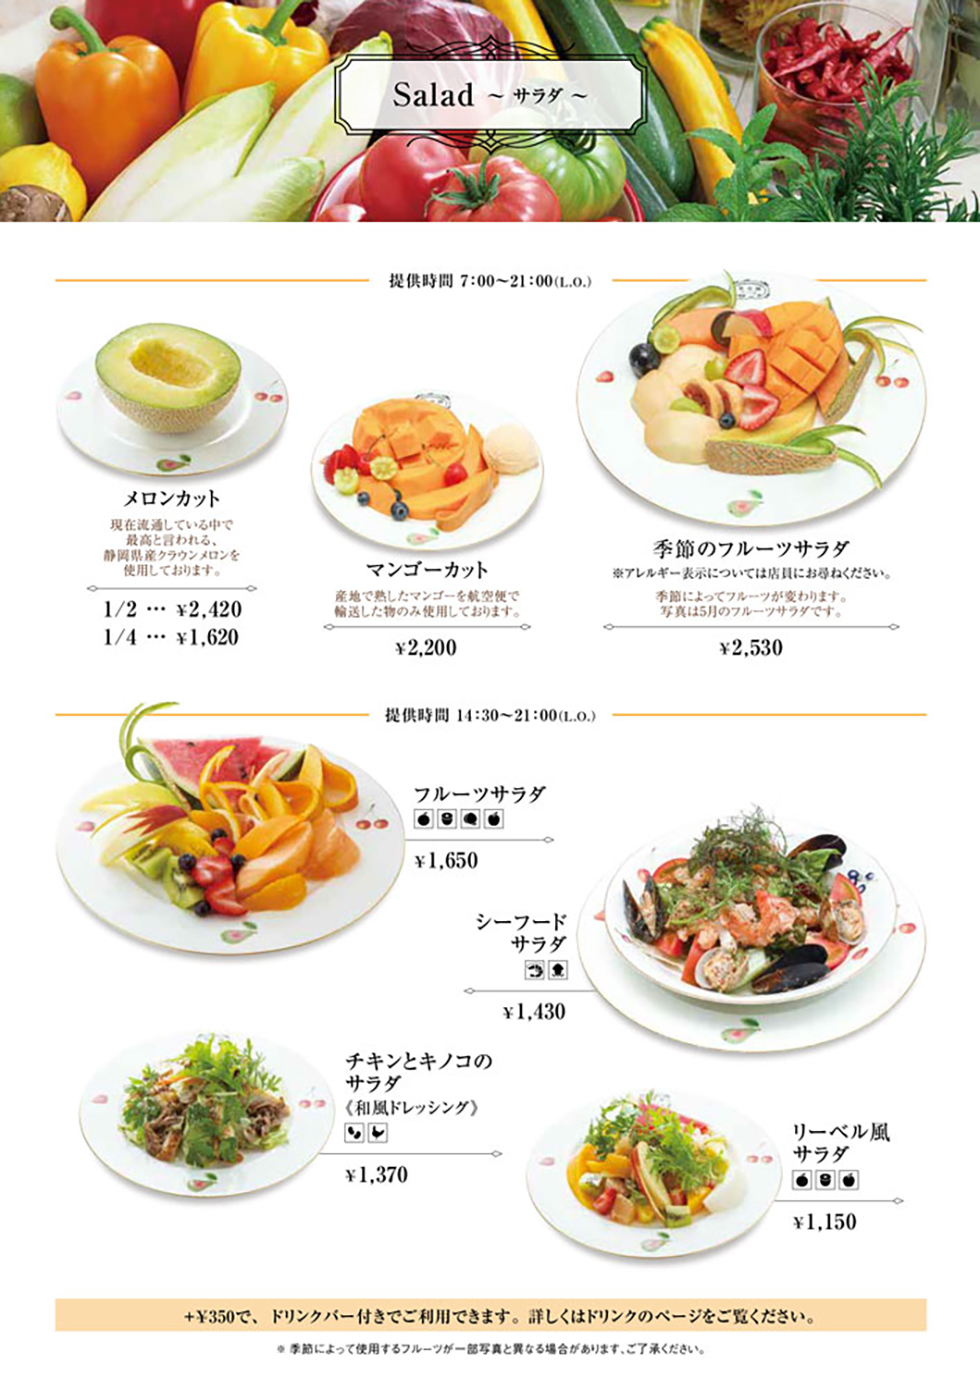 藤沢店の食事メニュー定番サラダ